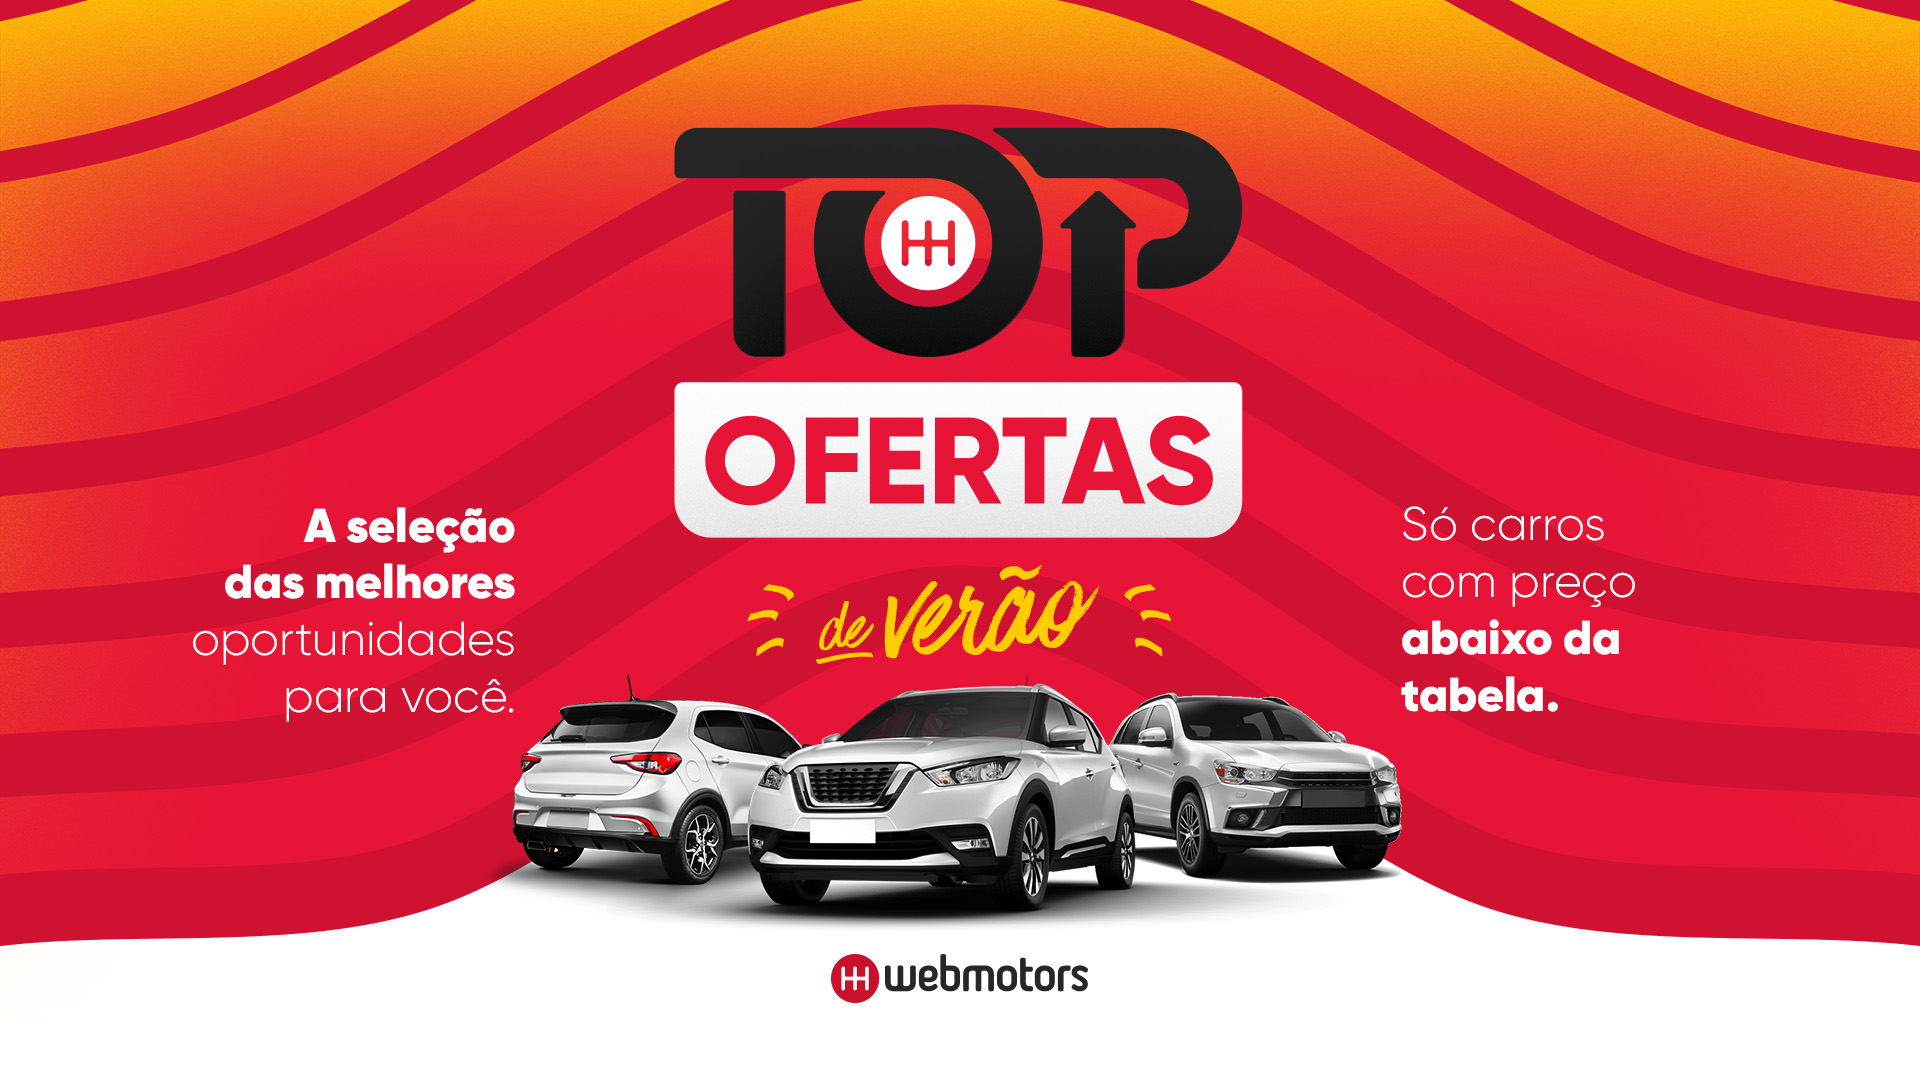  Top Ofertas de Verão Webmotors.